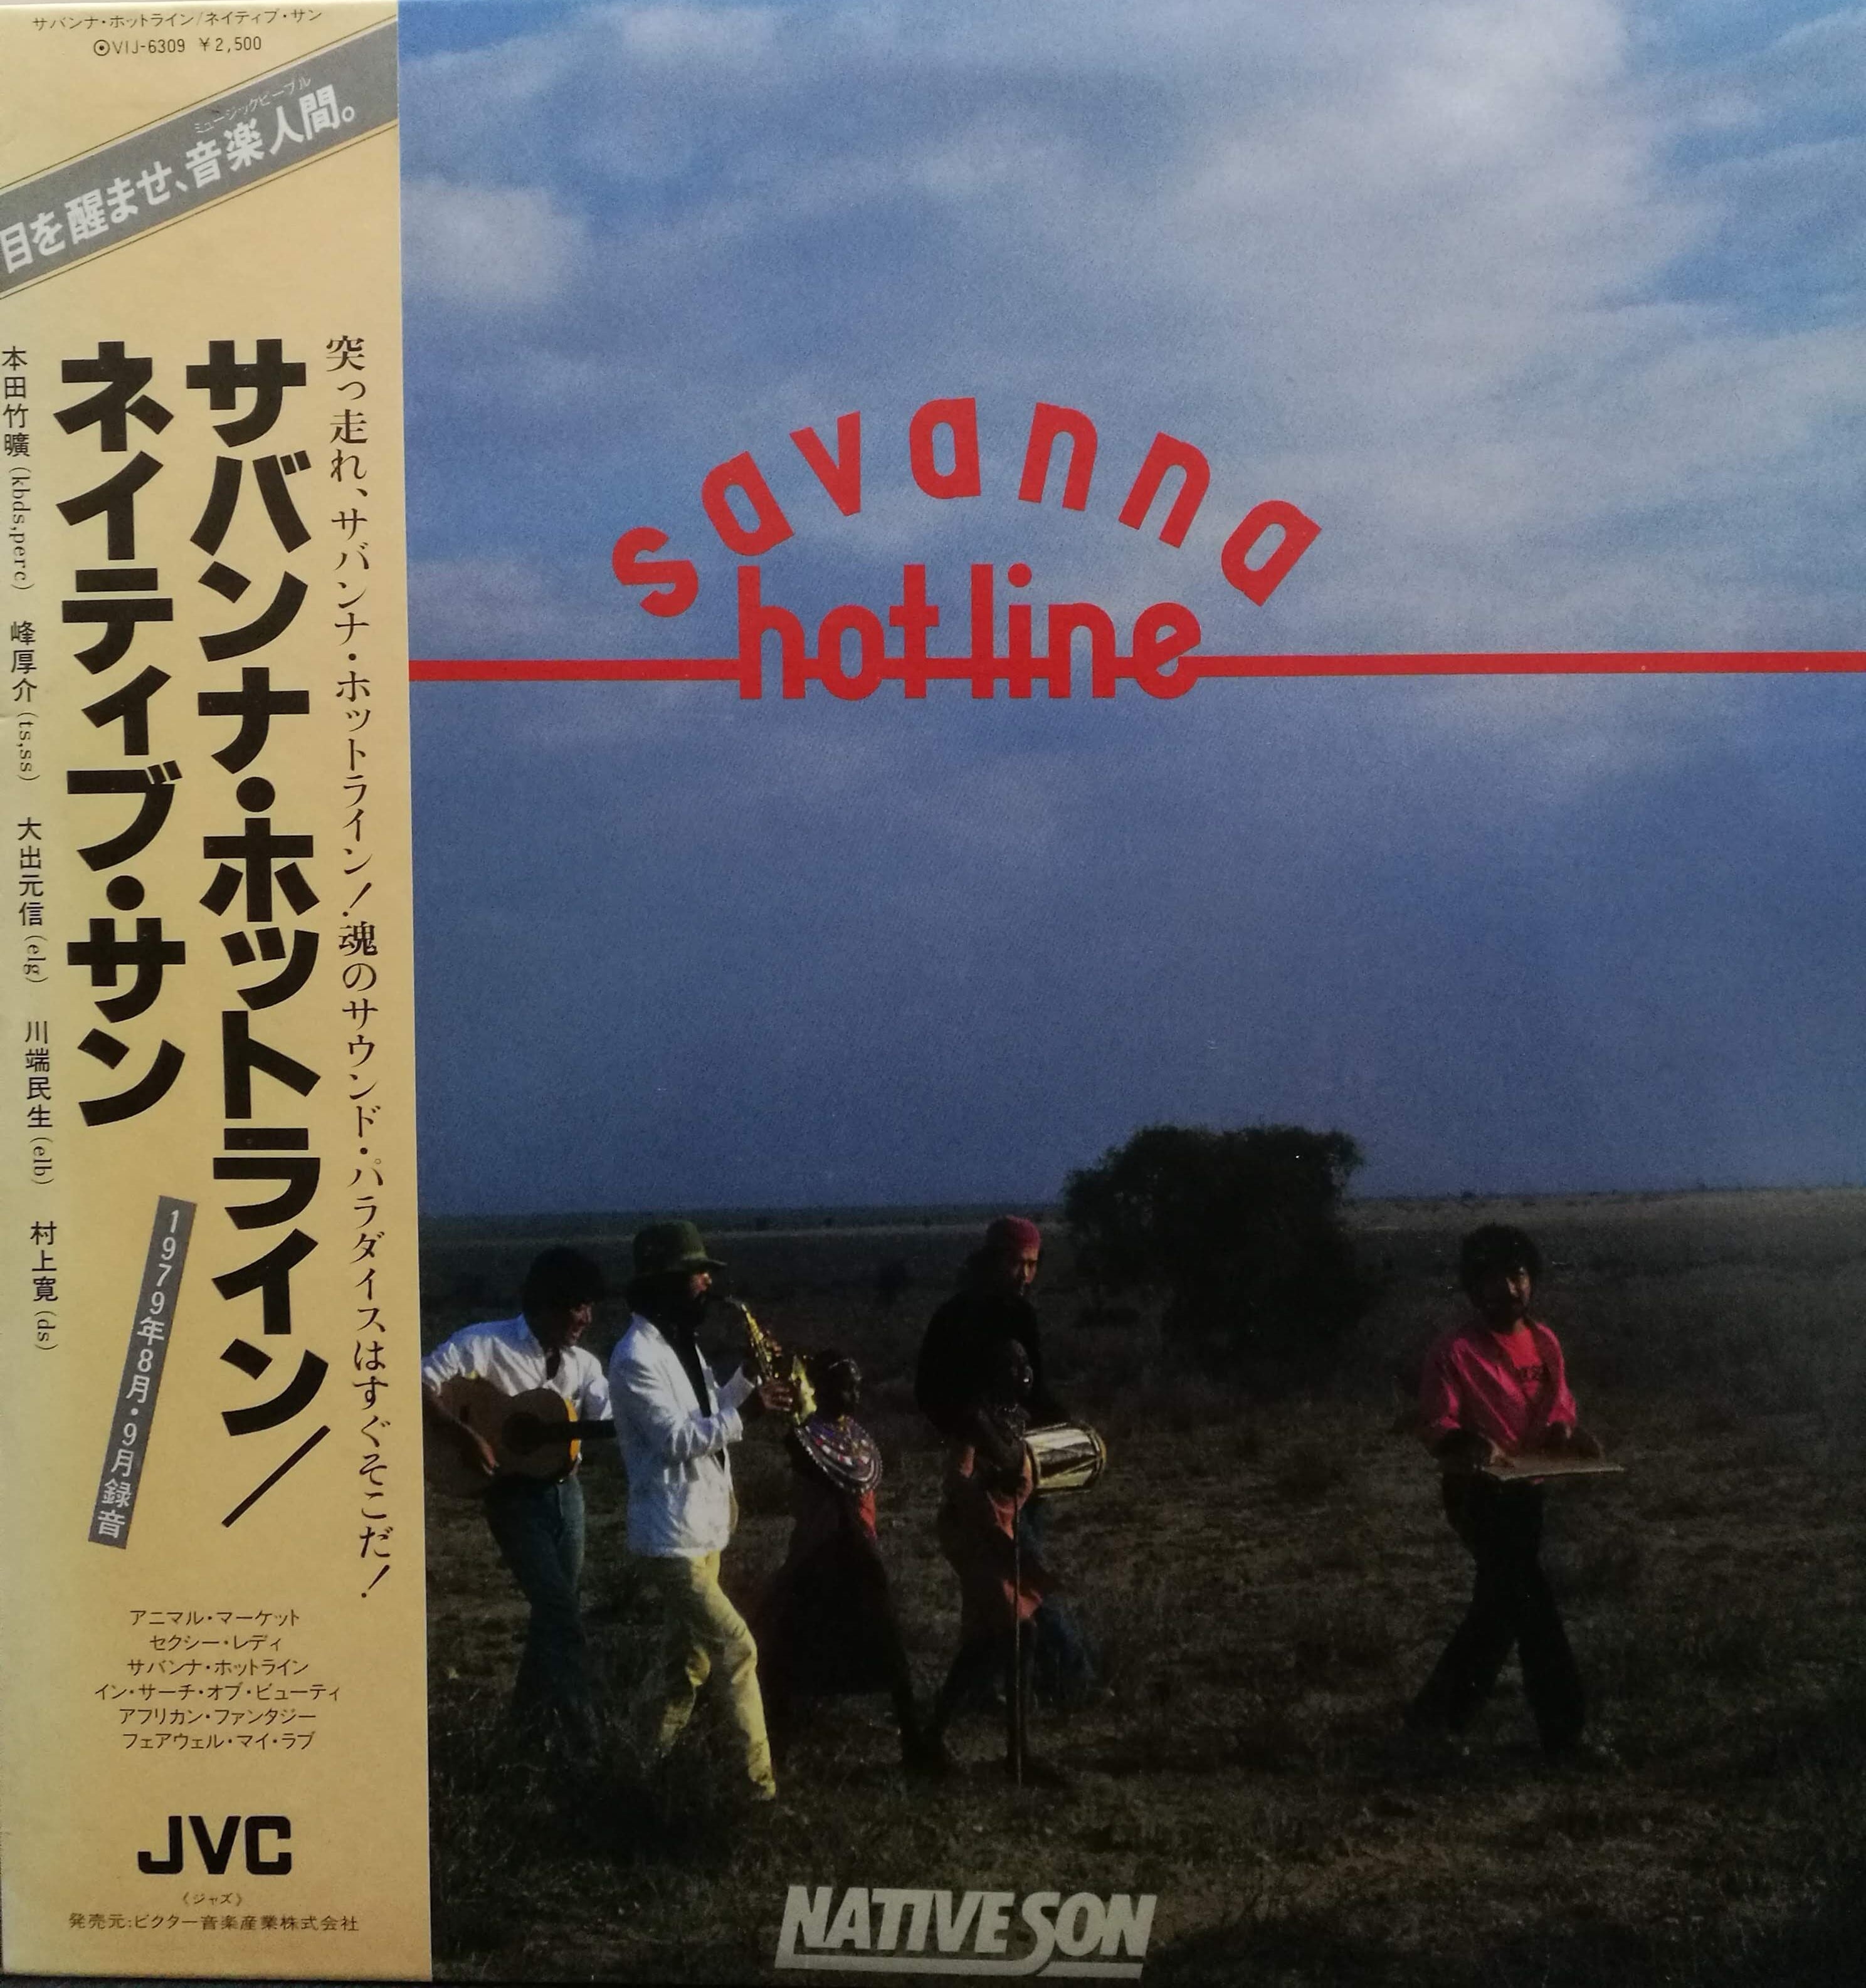 LP】Native Son = ネイティブ・サン / Savanna Hot-line = サバンナ